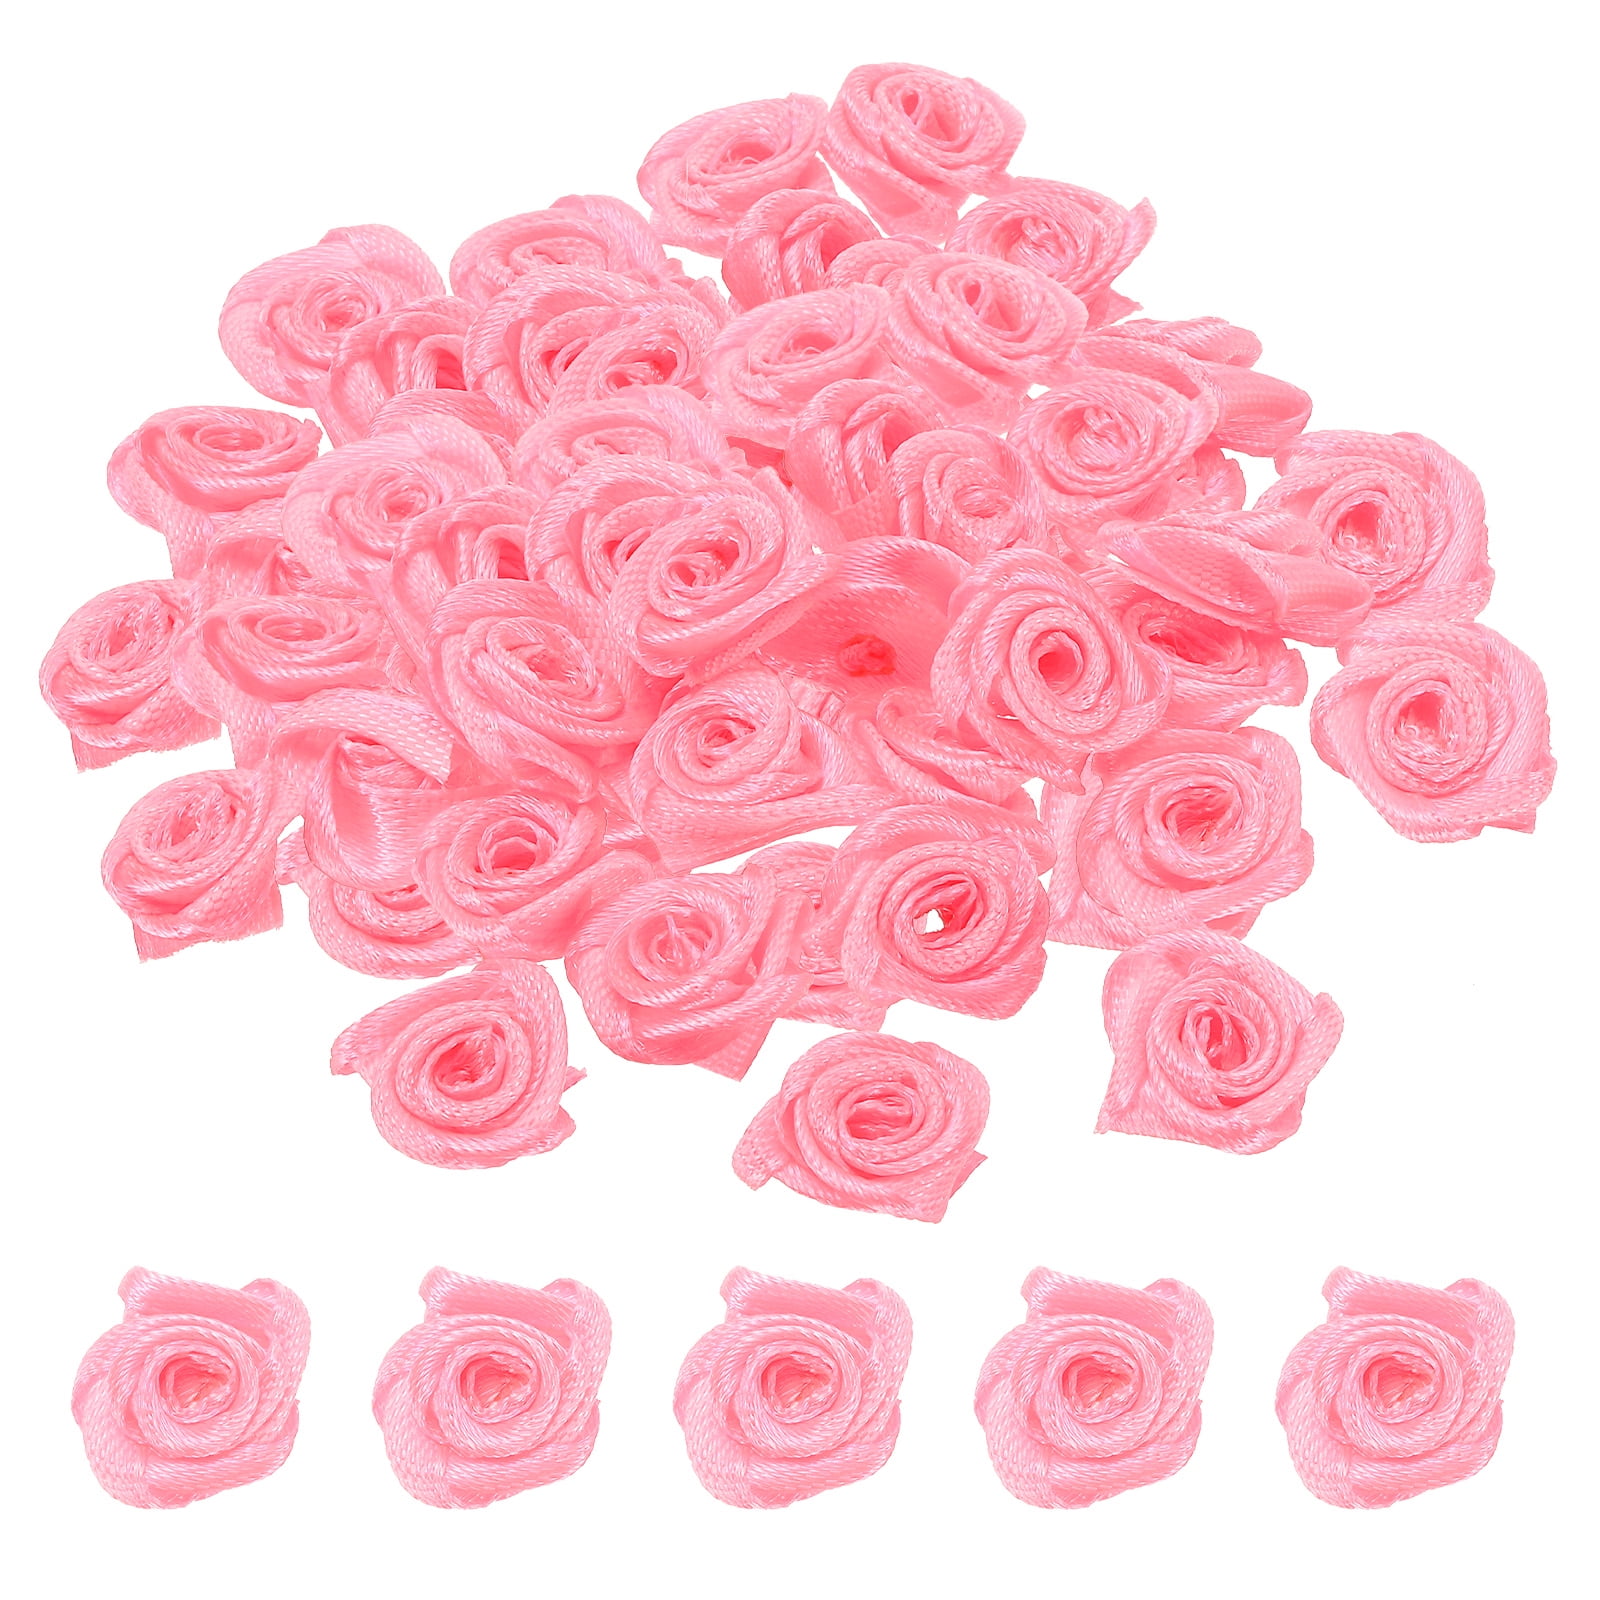 Uxcell Mini Satin Ribbon Roses Tiny Fabric Flowers Embellishments